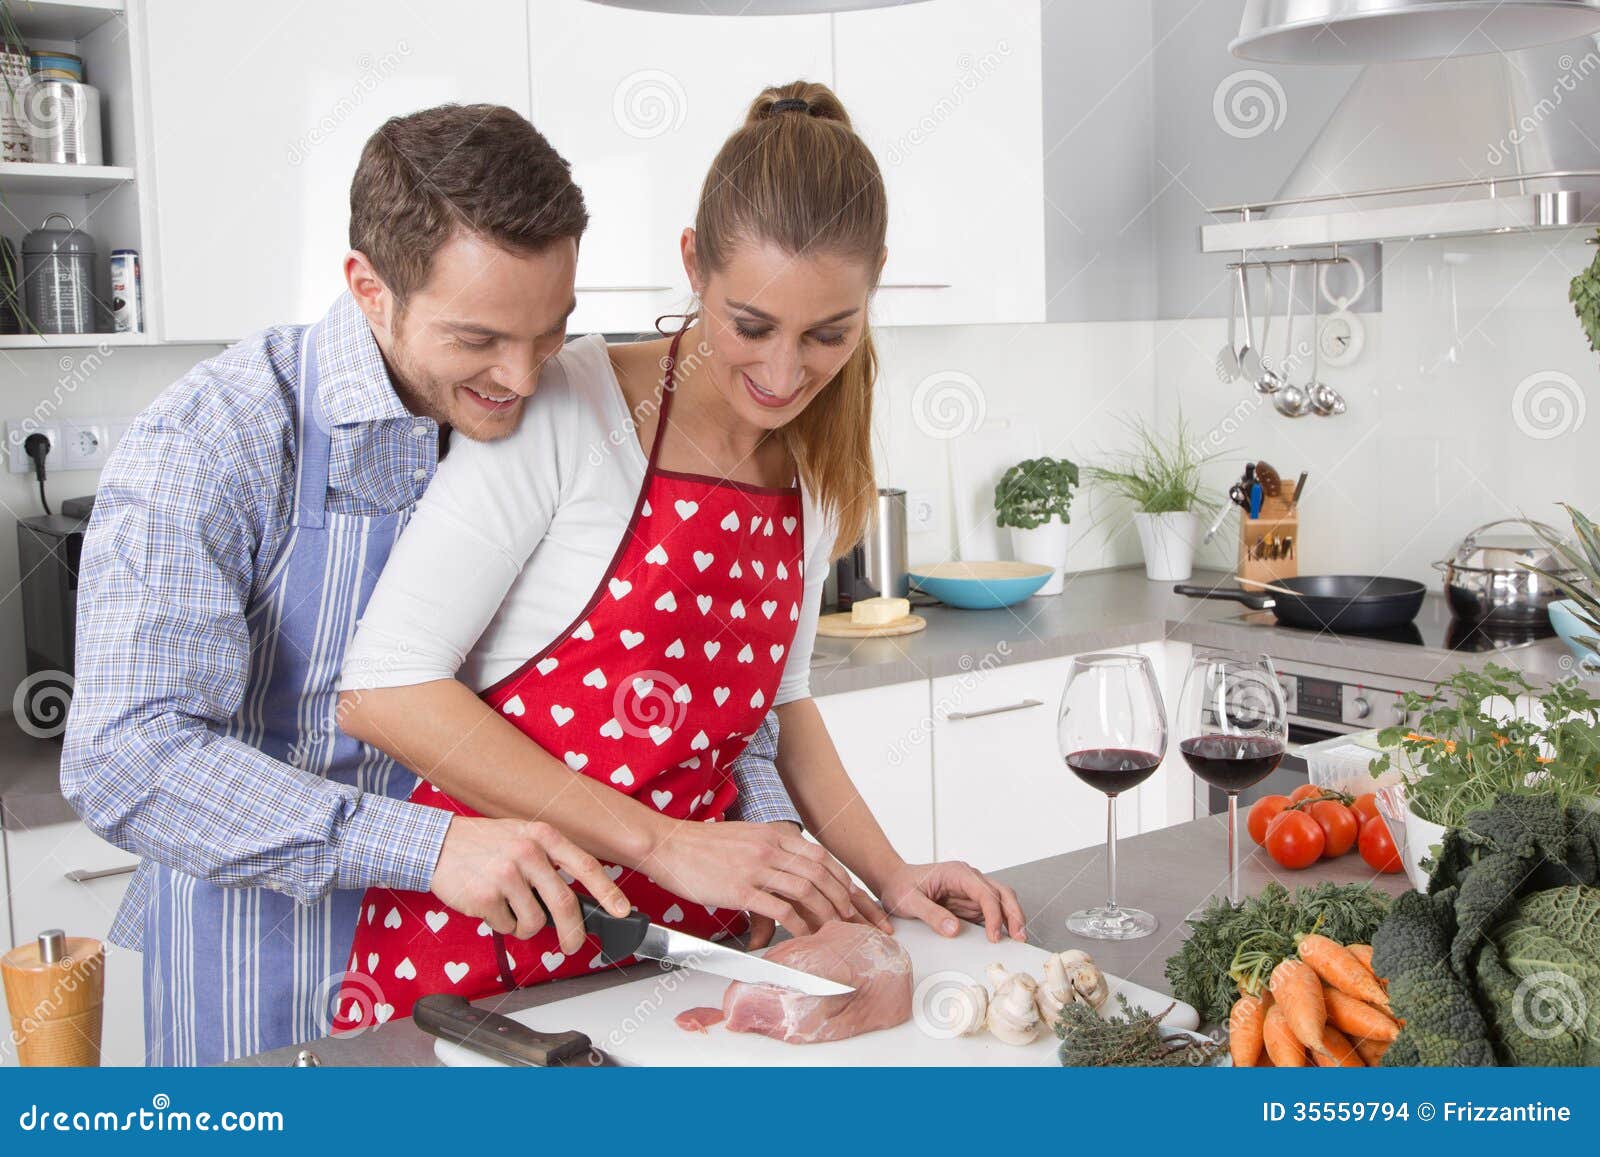 Пока жена готовит муж. Семейный быт. Семья женщина на кухне. Парень и девушка на кухне. Мужчина в фартуке на кухне.